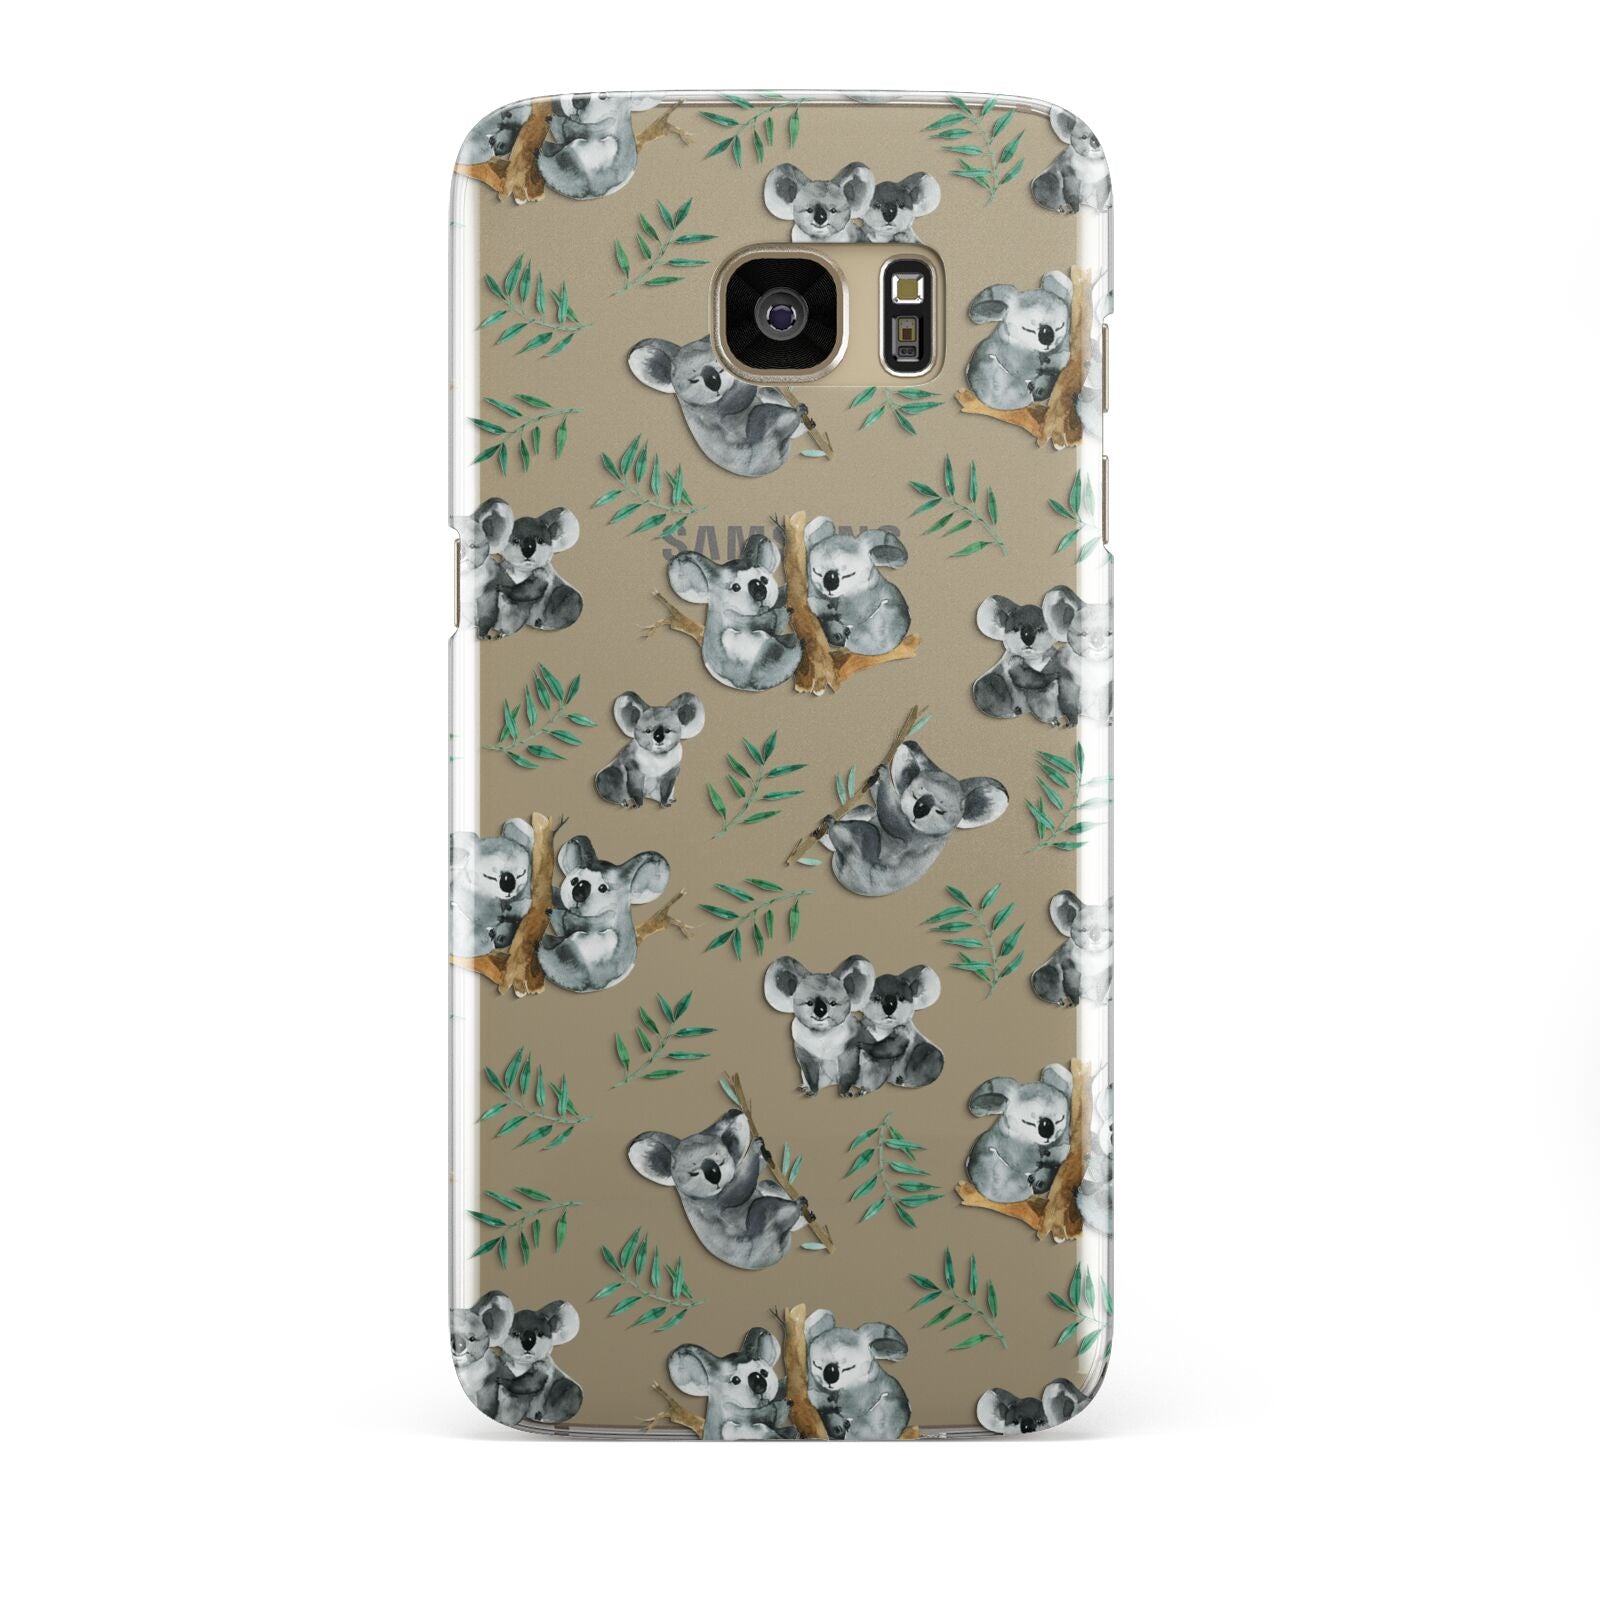 Koala Bear Samsung Galaxy S7 Edge Case